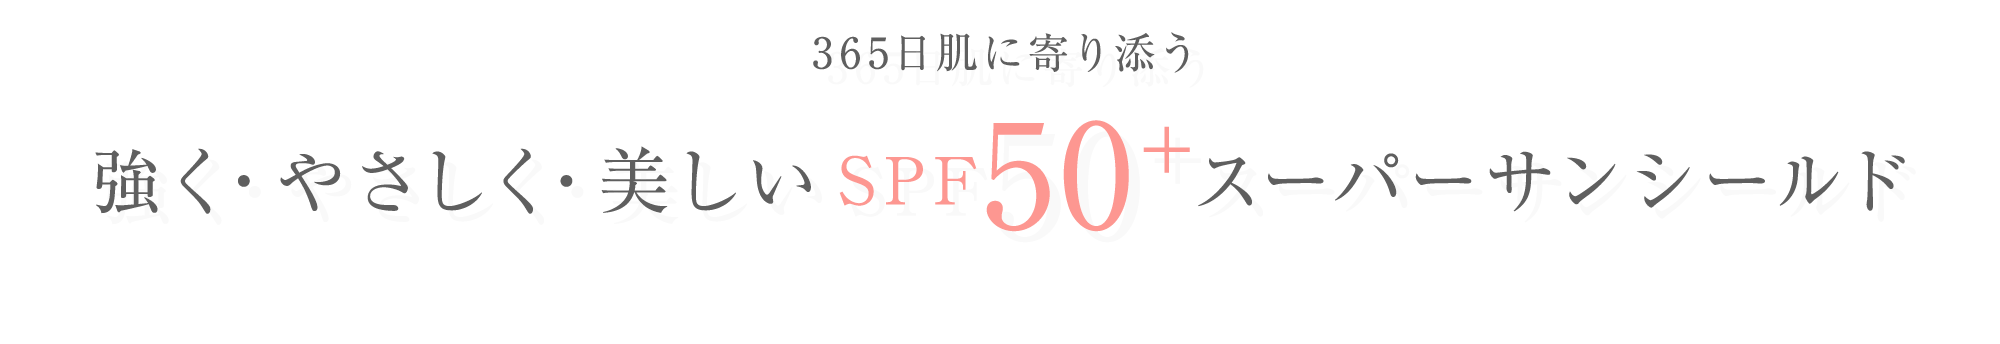 365日肌に寄り添うもっとも進化したSPF50+スーパーサンシールド